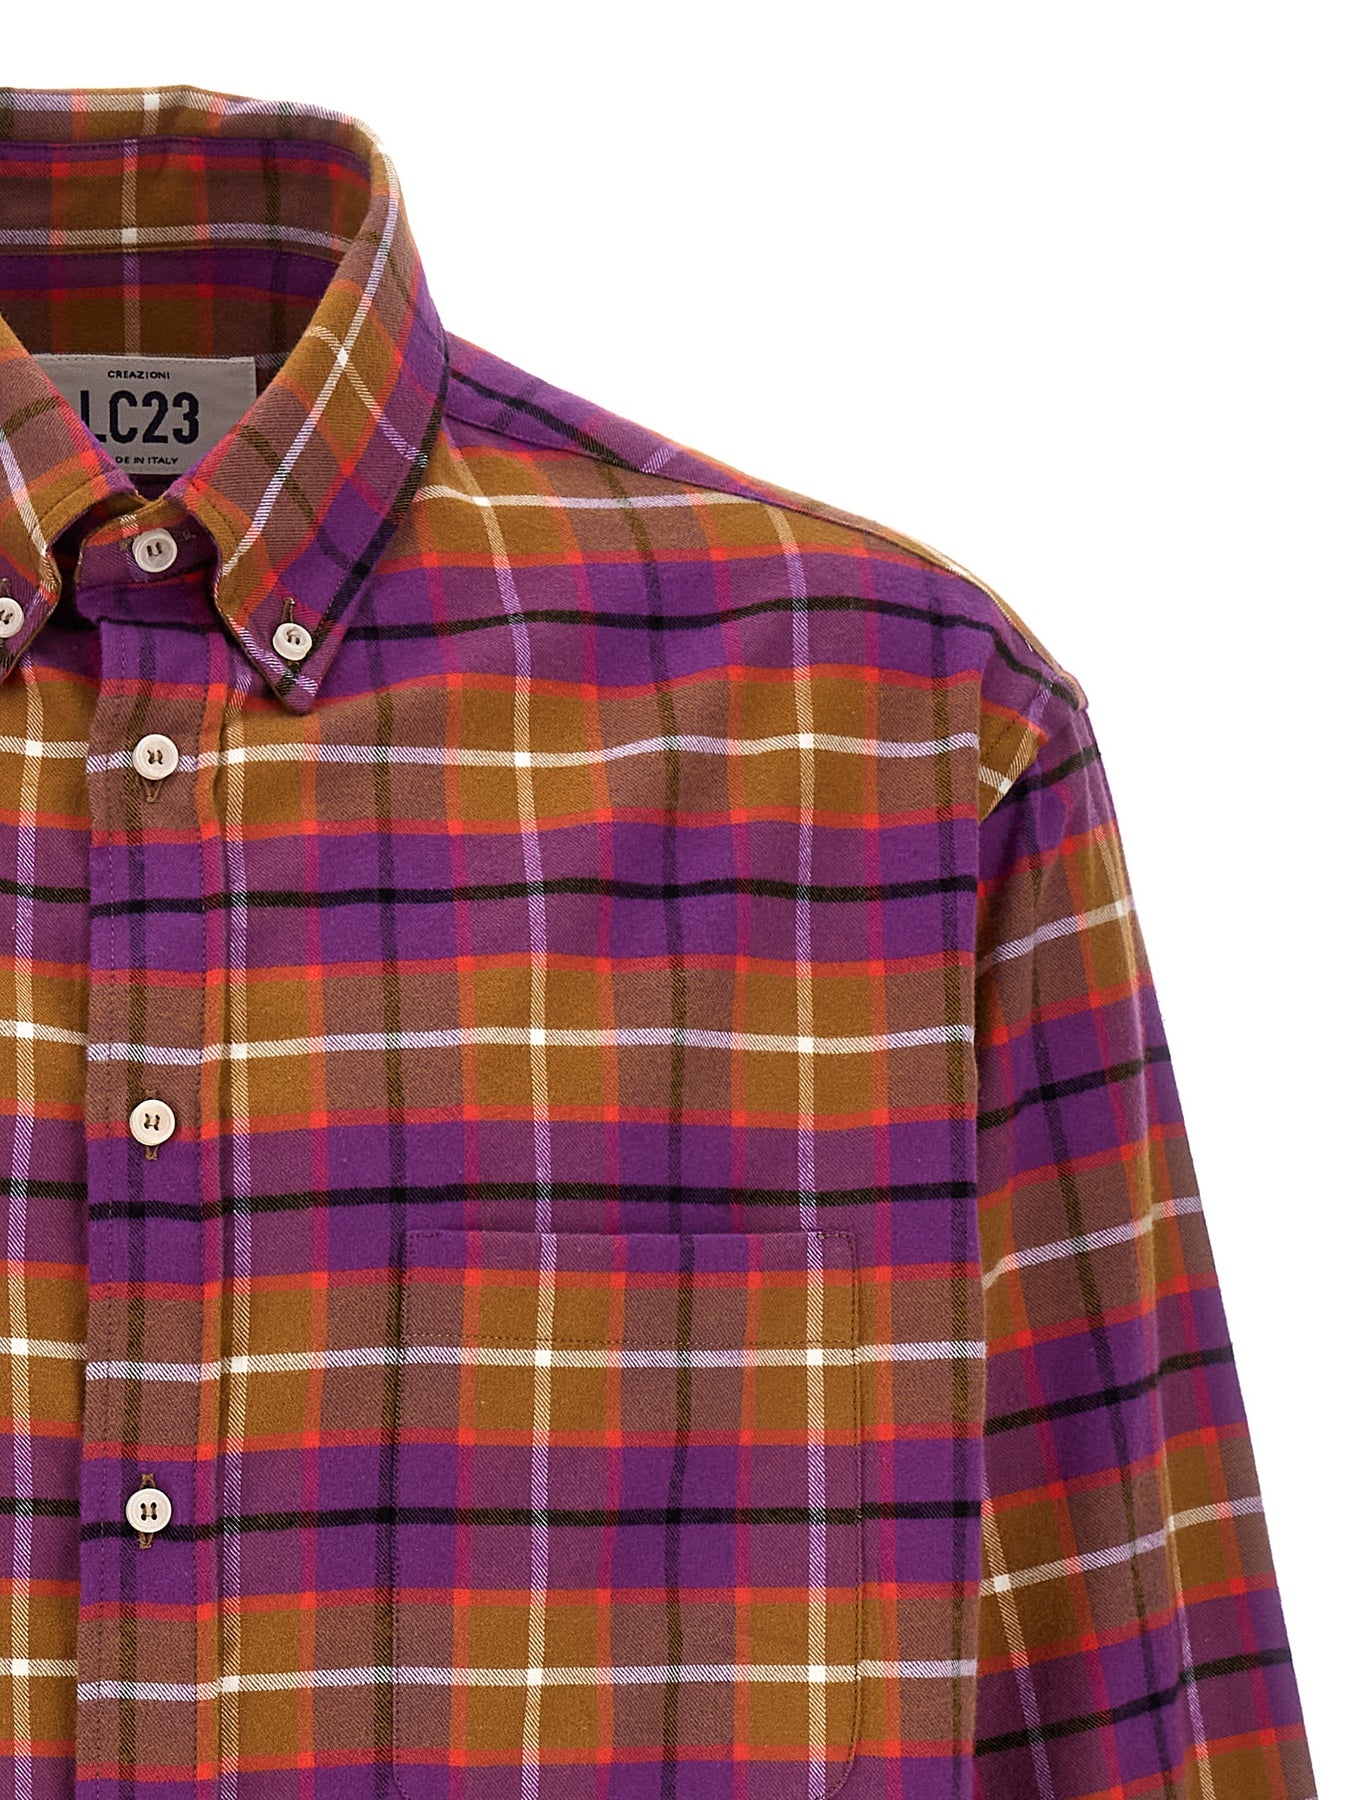 Shop Lc23 Check Flannel Shirt, Blouse Multicolor